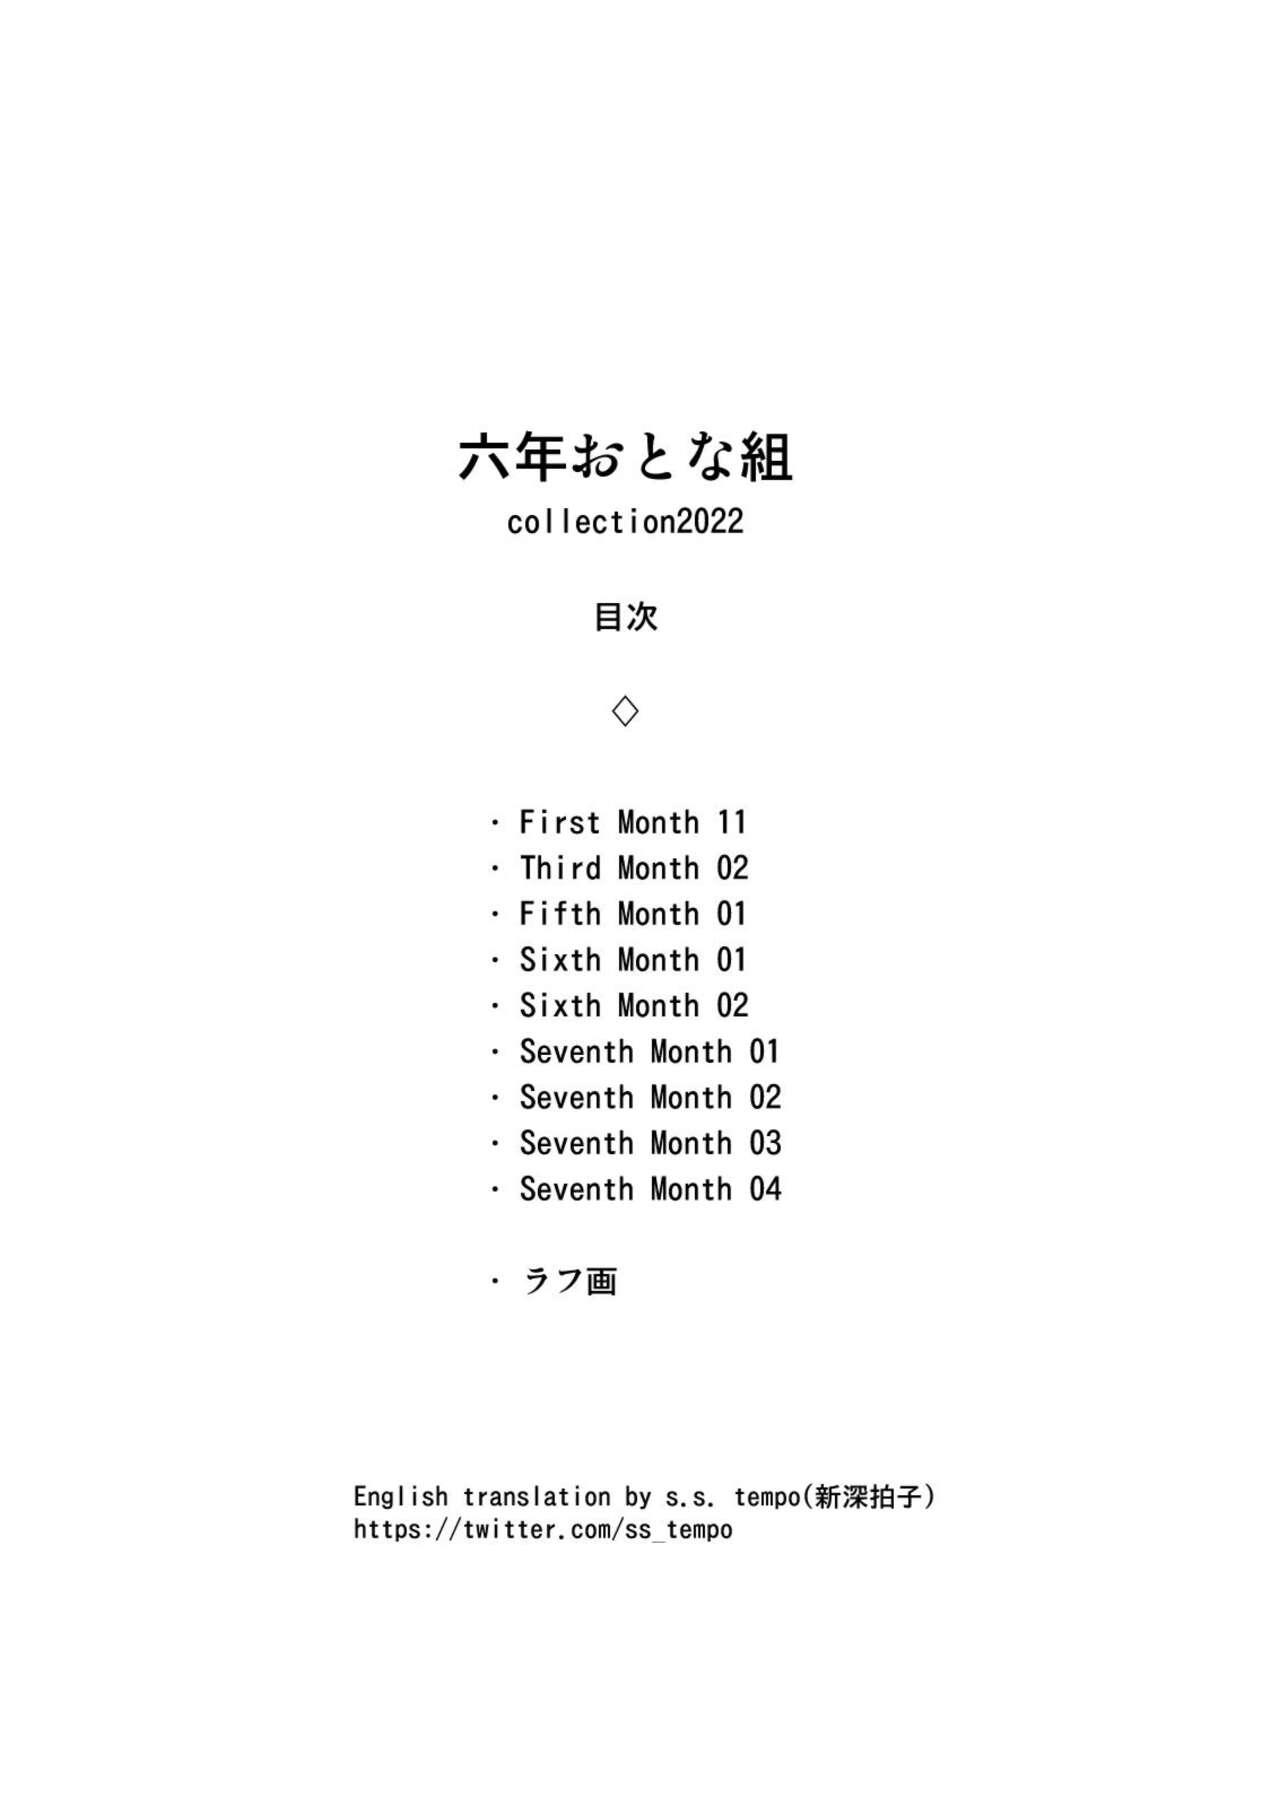 Rokunen Otona-gumi Collection 2022 2